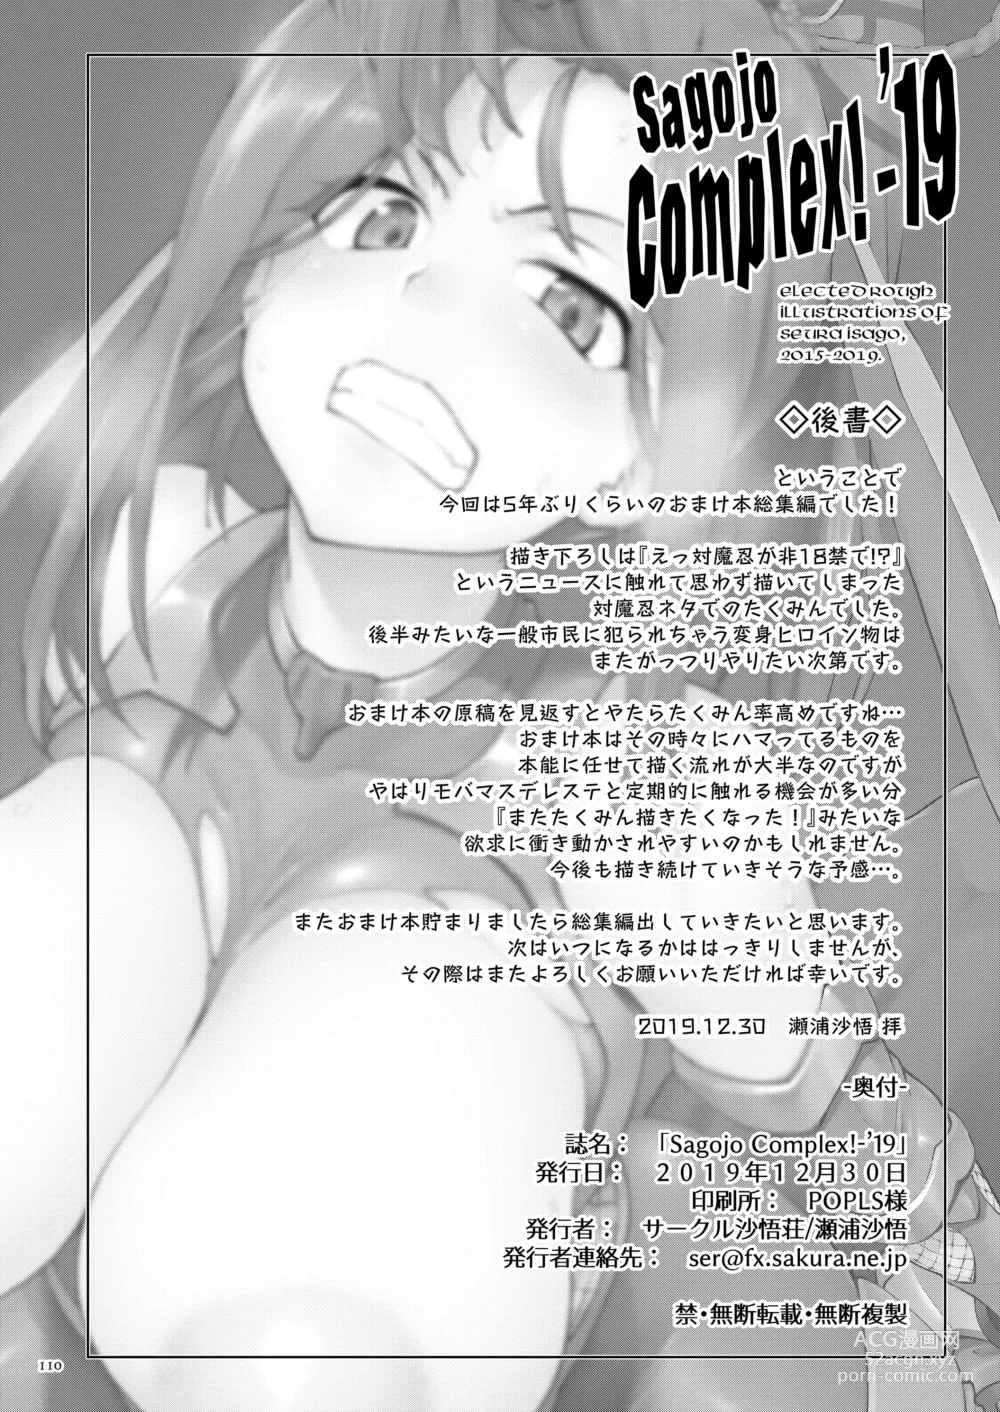 Page 110 of doujinshi Sagojo Complex!-19